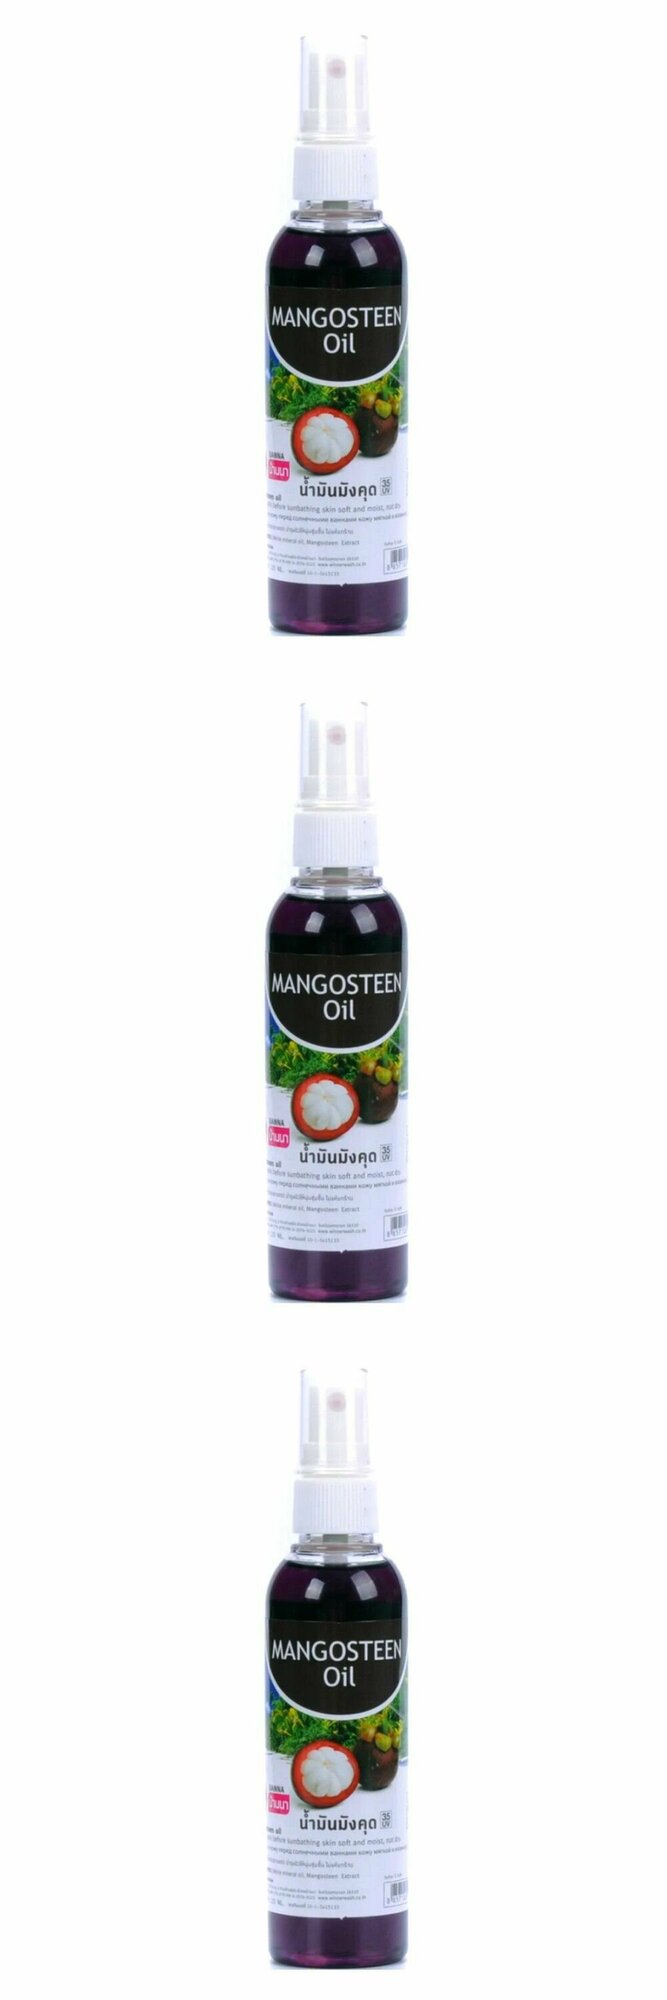 Banna Массажное масло для тела Mangosteen Oil, с экстрактом мангостина, 120 мл, 3 шт.